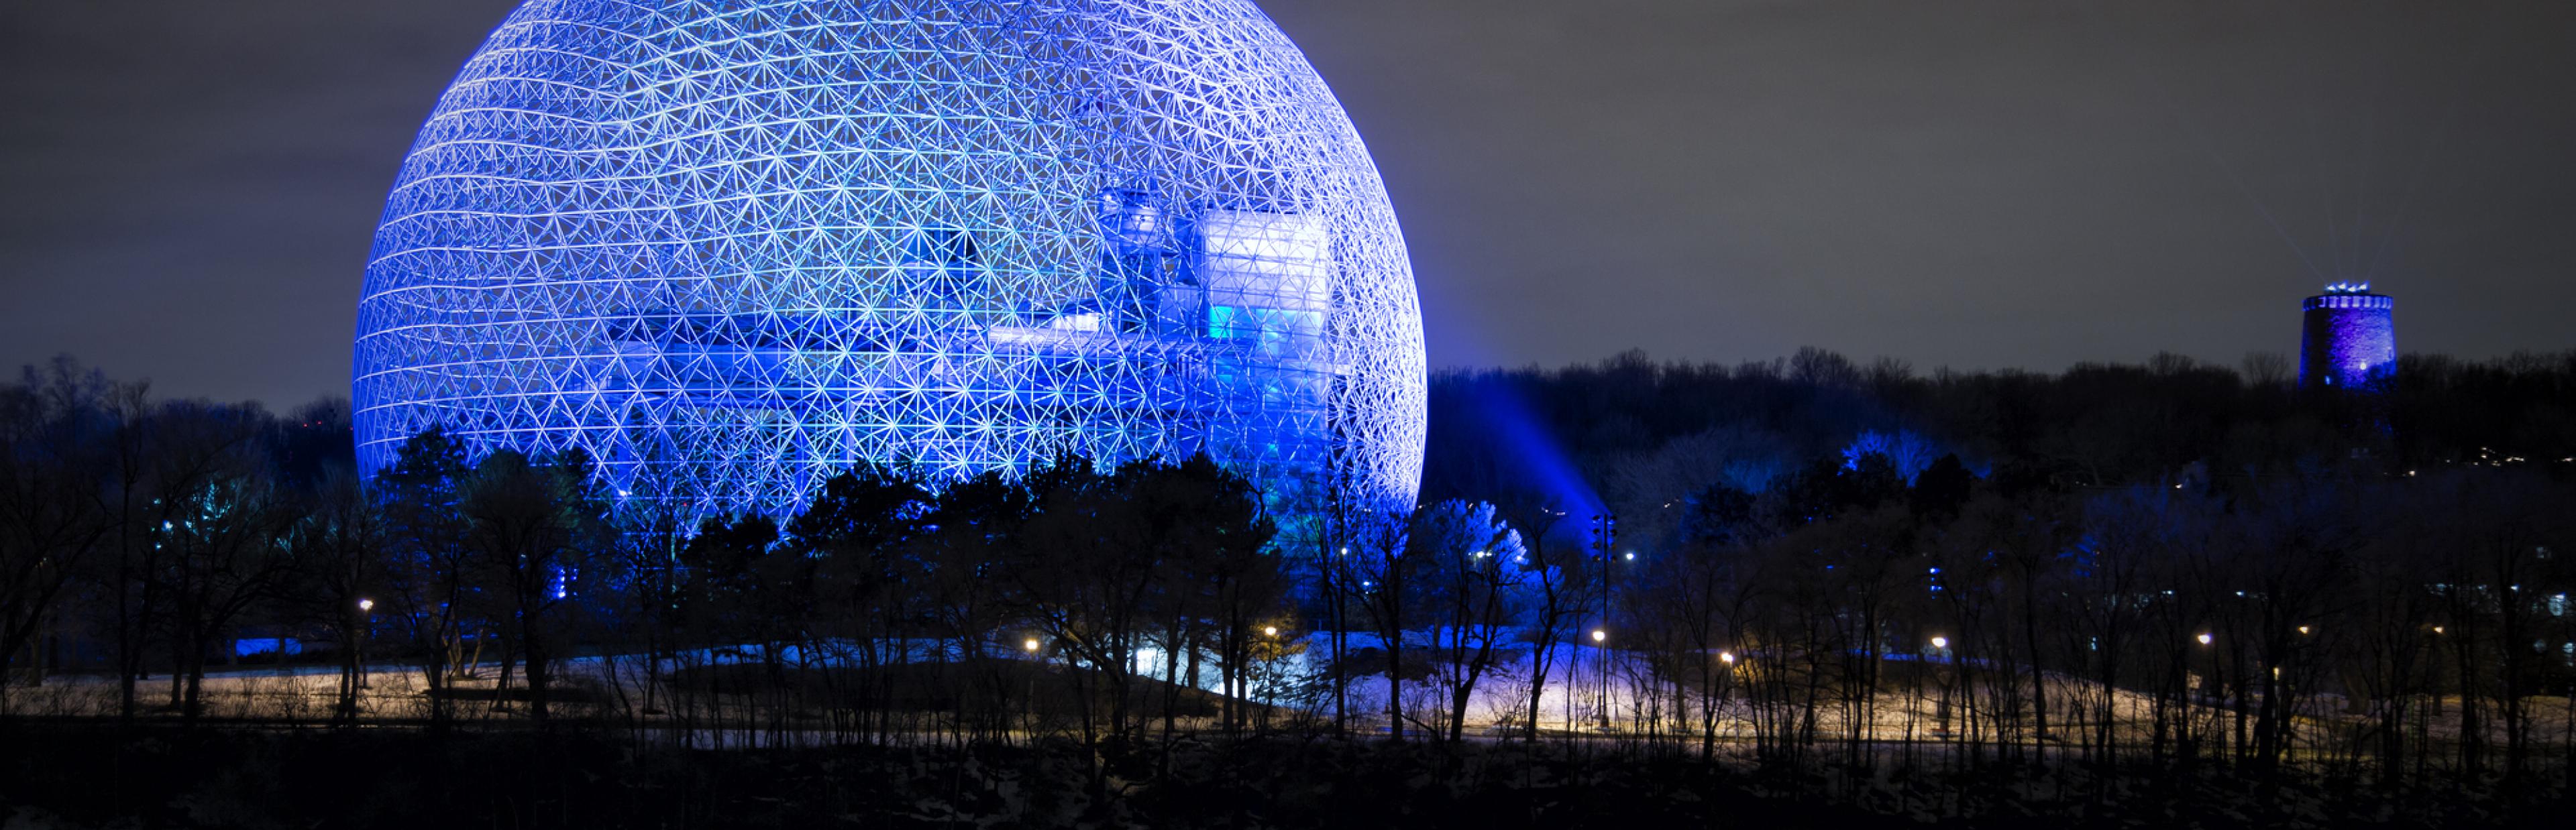 Die Biosphäre in Montreal nachts und in blau erleuchtet